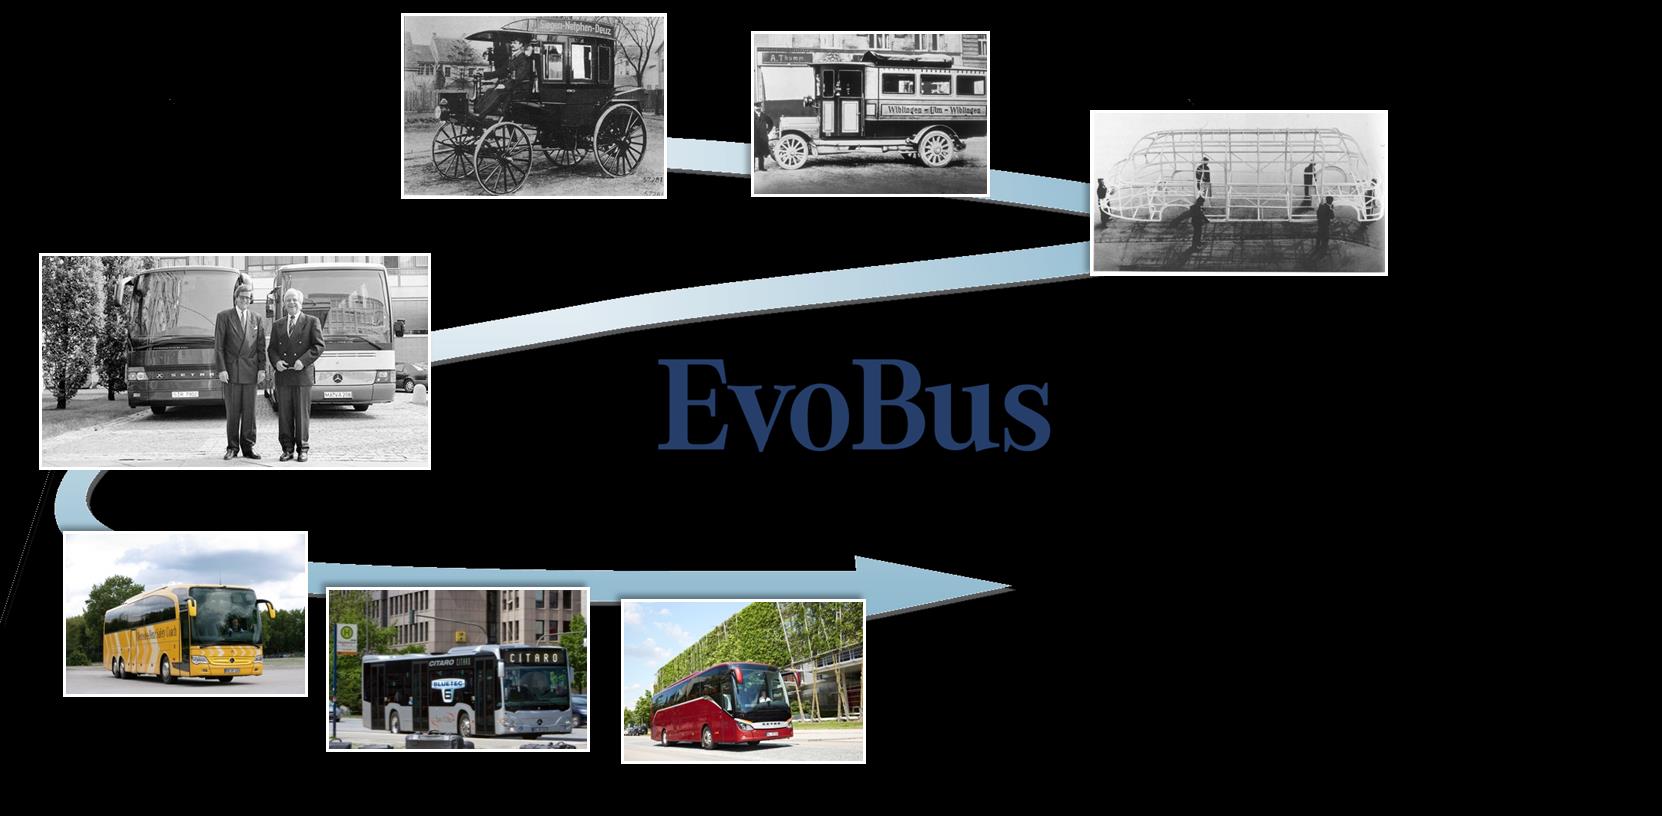 Willkommen in einem Jahr der Jubiläen für Busse 120 Jahre Omnibus ehrgeizige Ziele: Leistungsfähiger Produktions- und Entwicklungsverbund